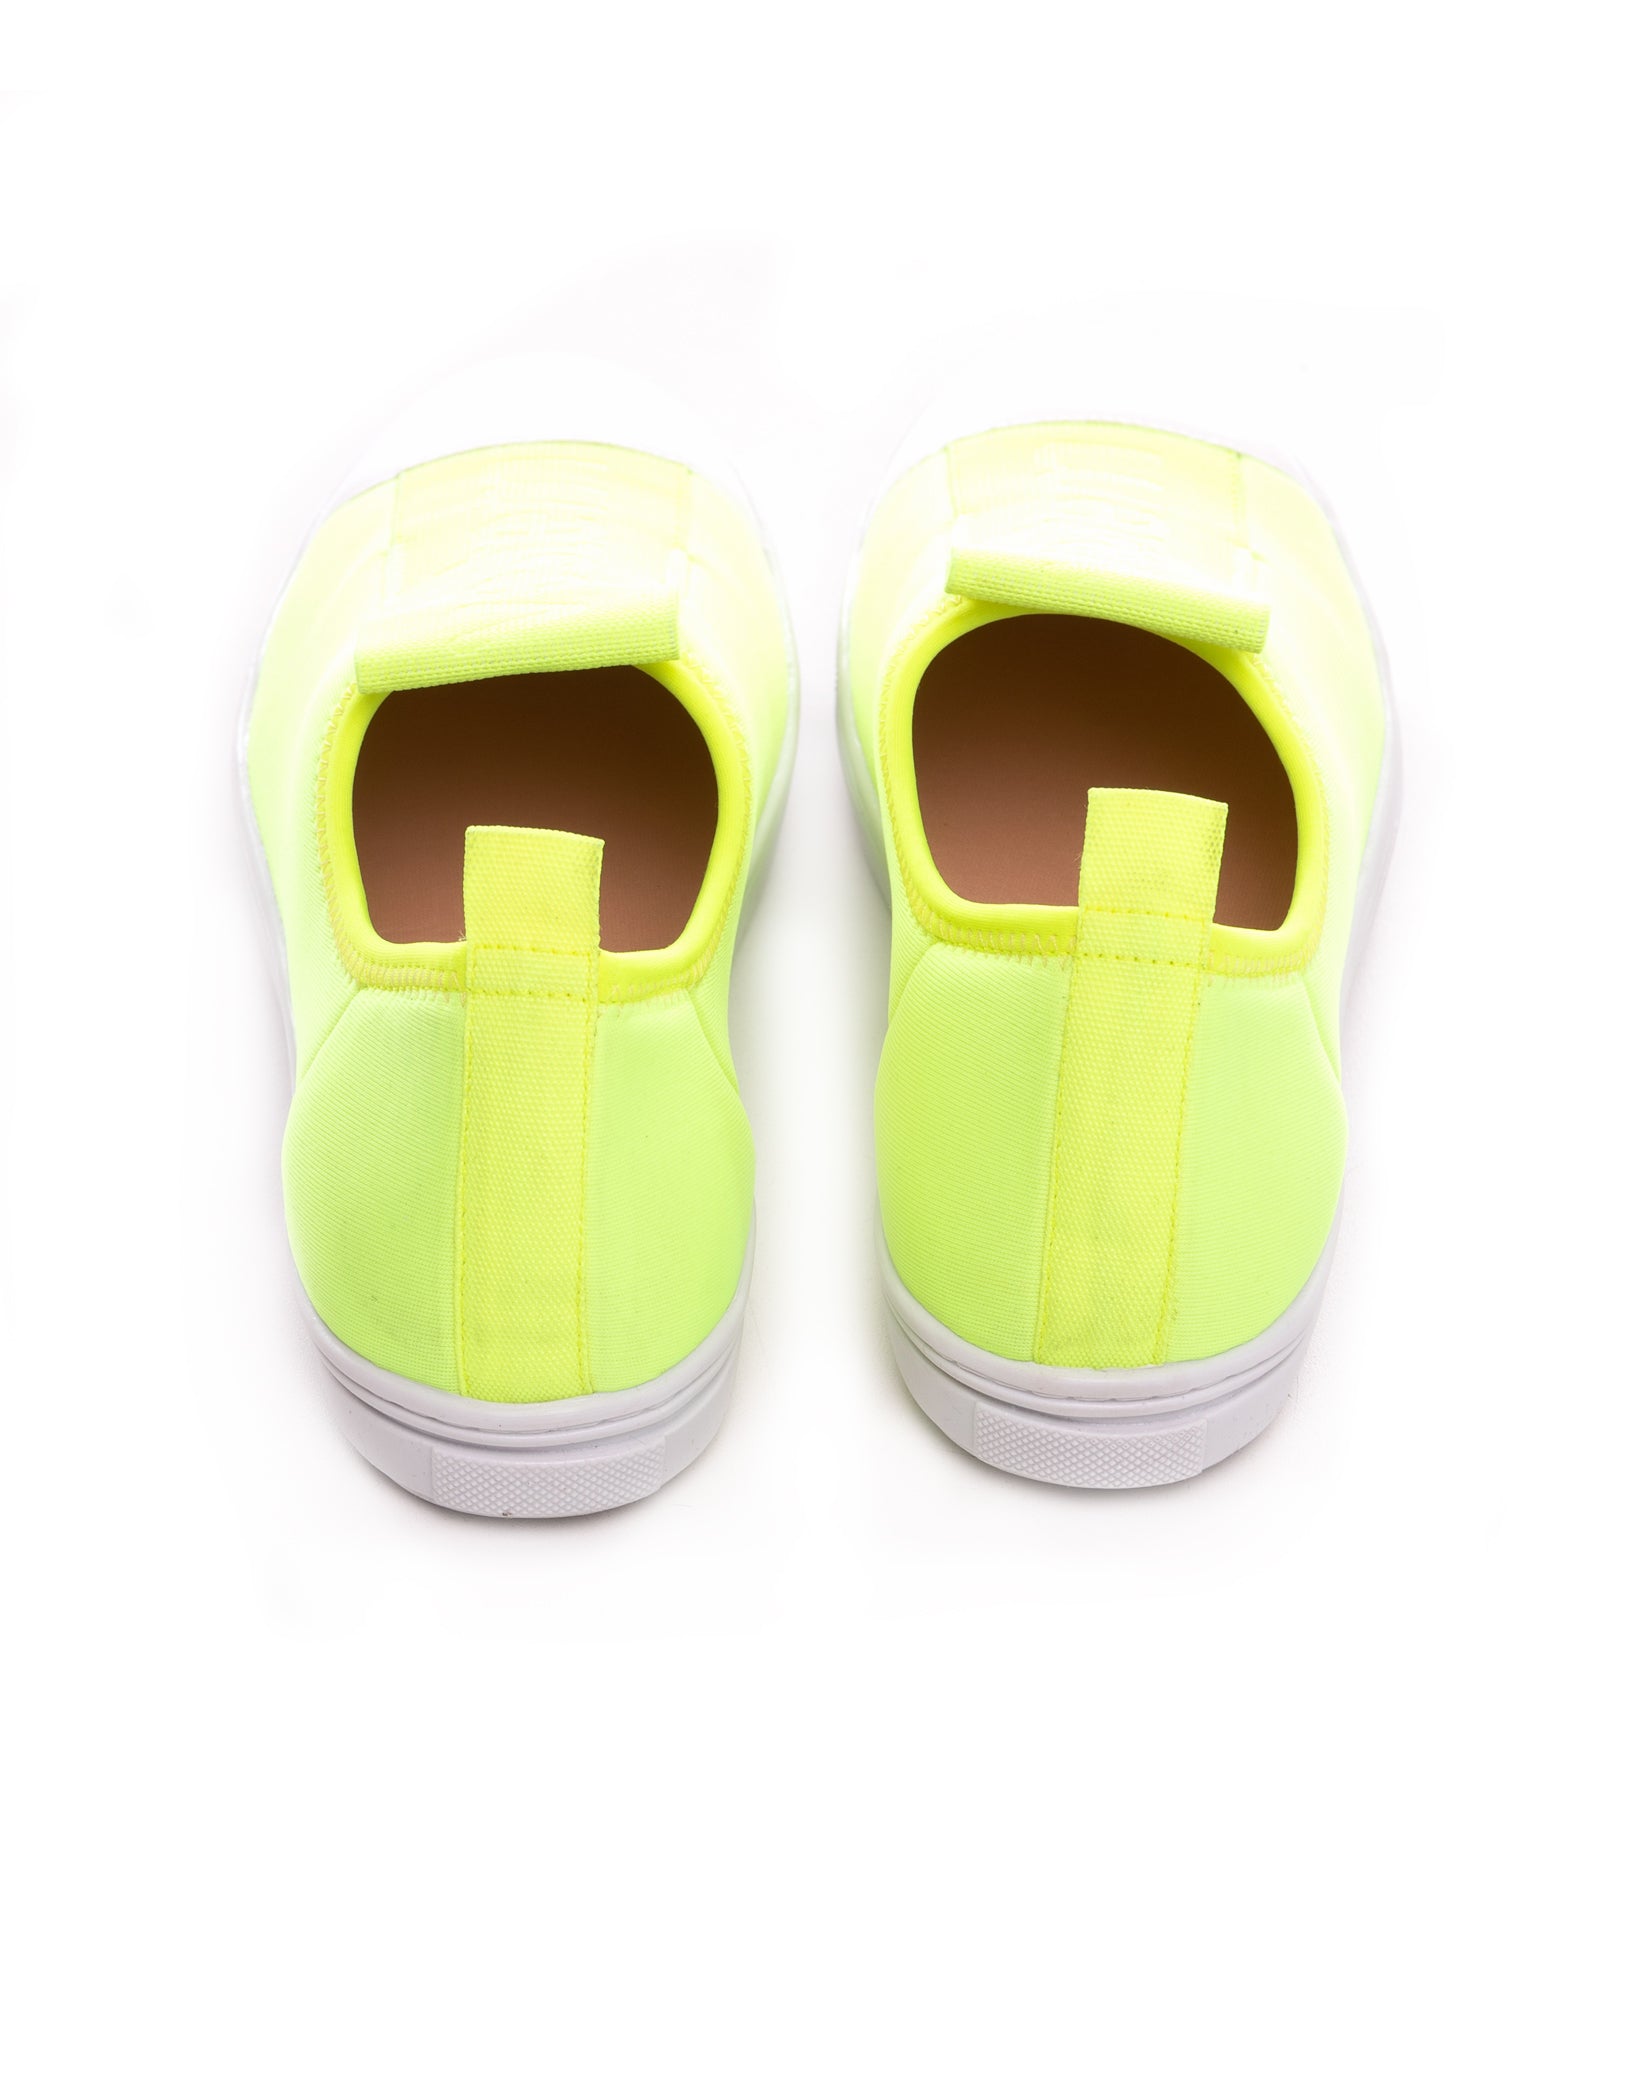 Vestem - Neon Yellow Portinari Tennis Shoes - TE19C0009